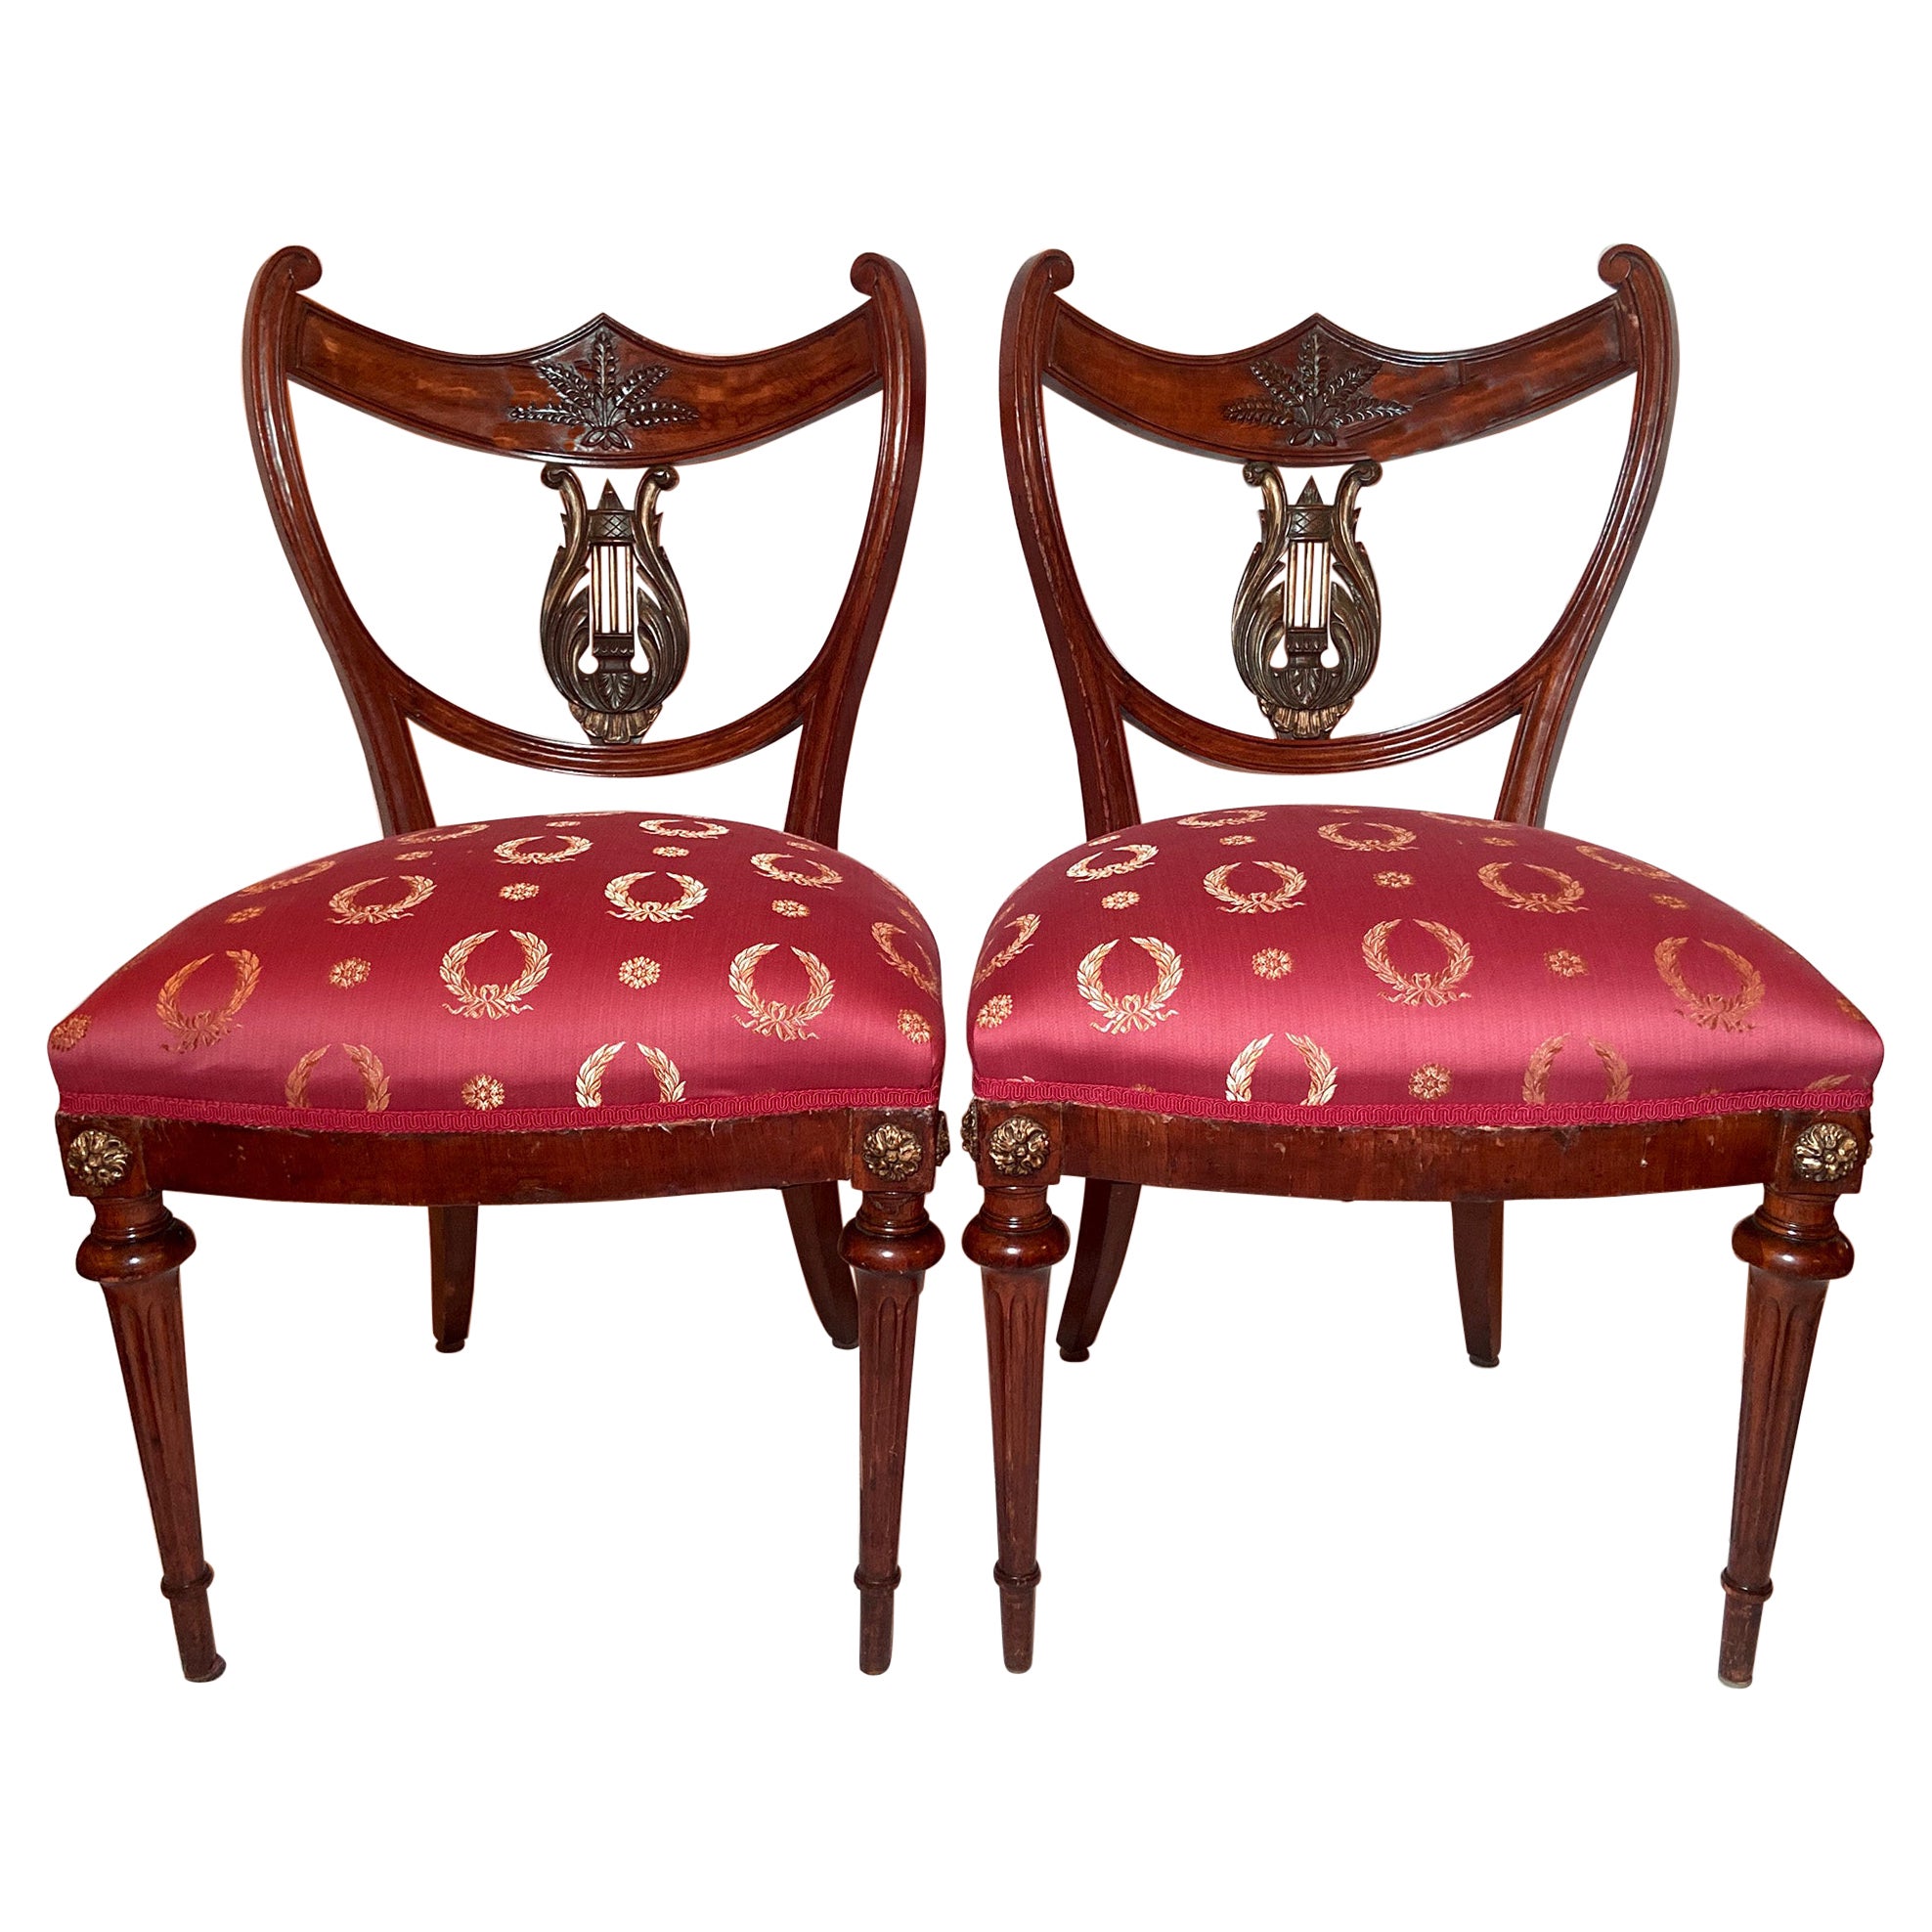 Paire de chaises anciennes en acajou de style Régence anglaise, vers 1820-1830.